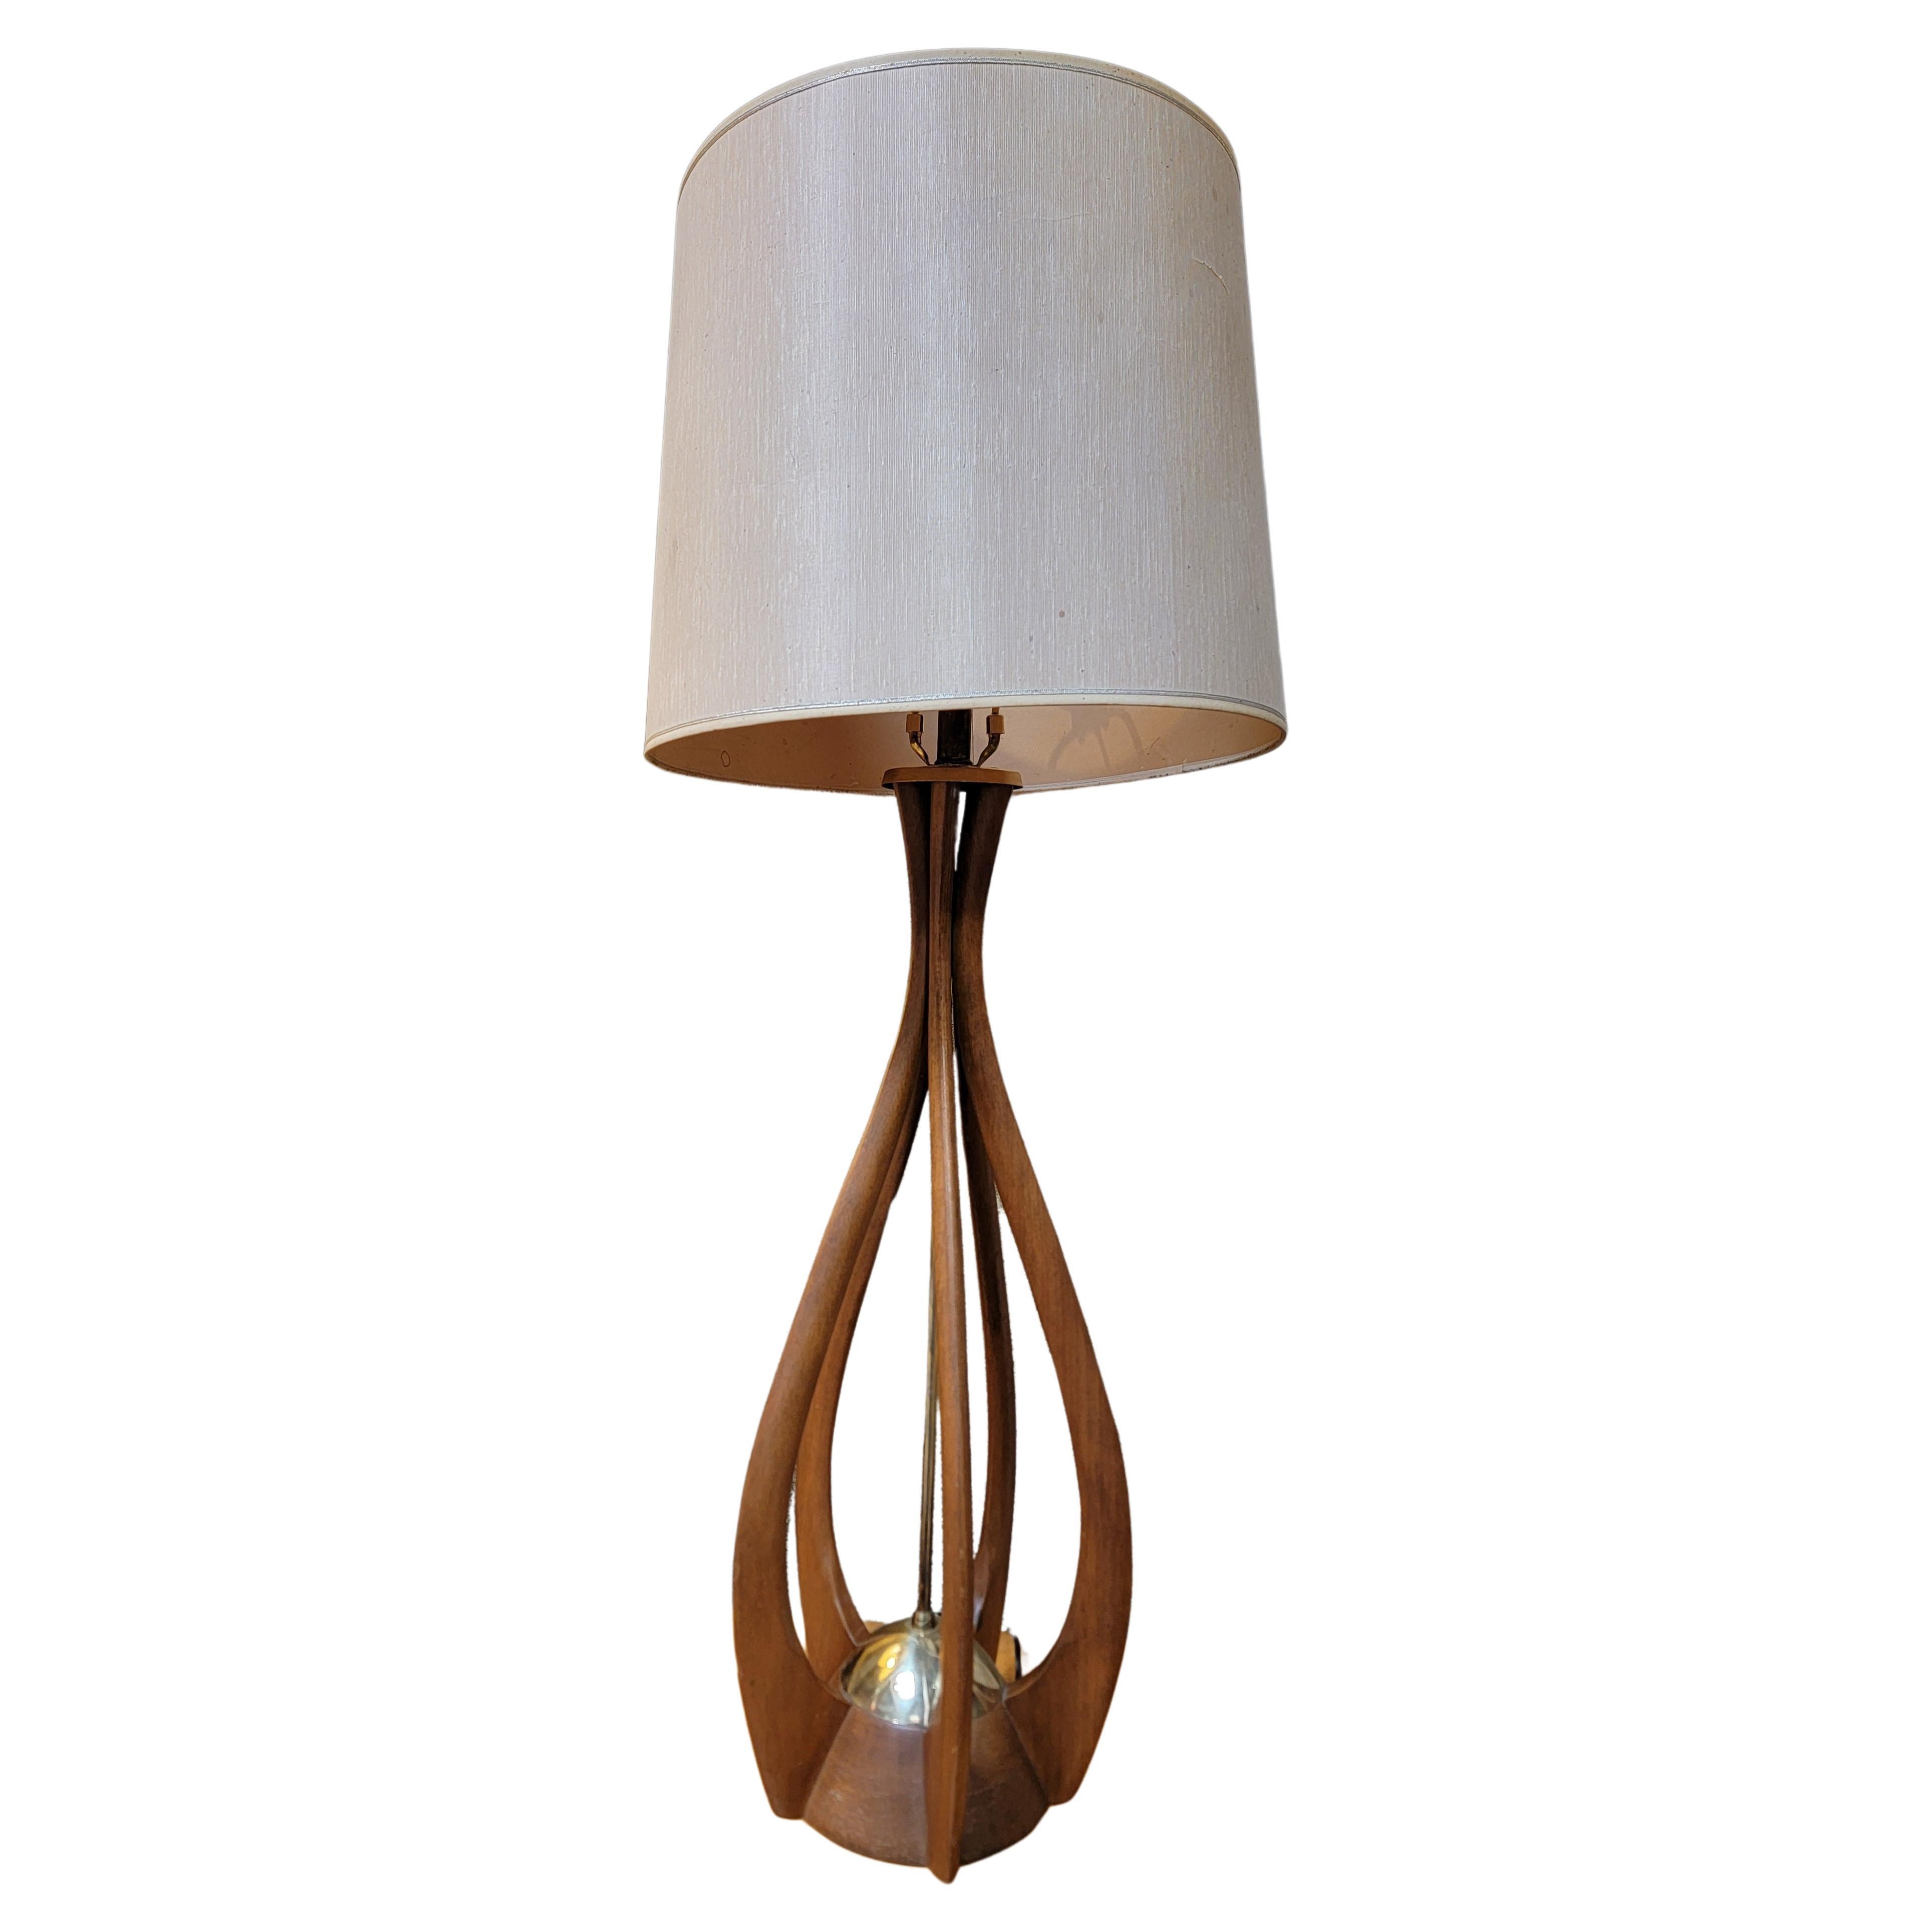 Sculptural Table Lamp manner of Modeline For Sale